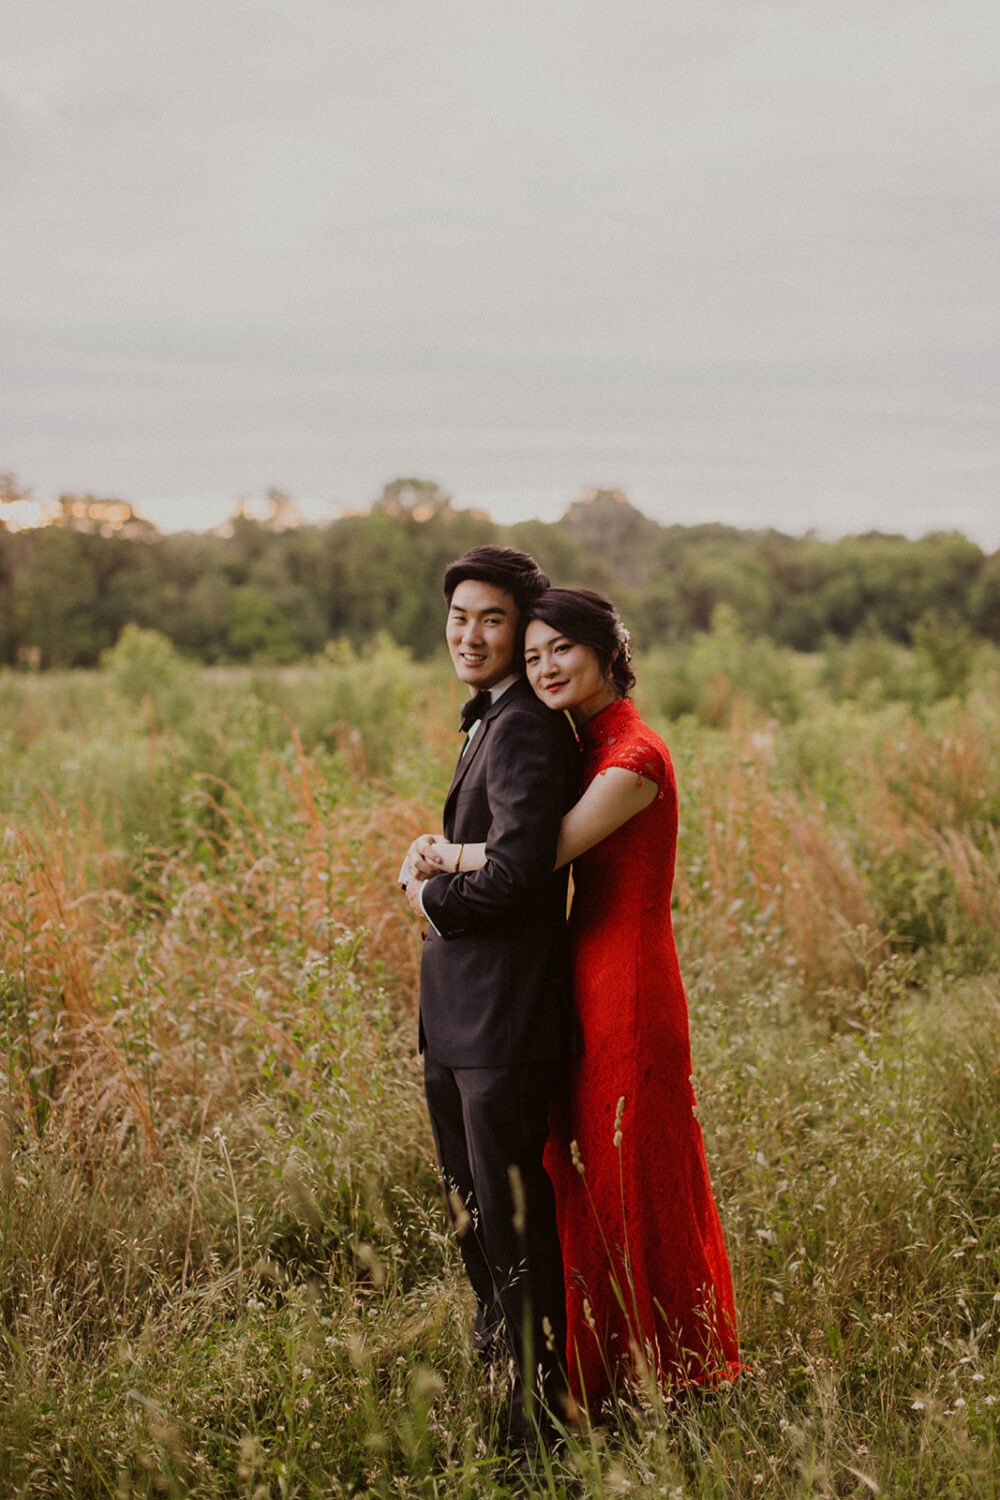 Couple embraces in meadow at Virginia wedding venue